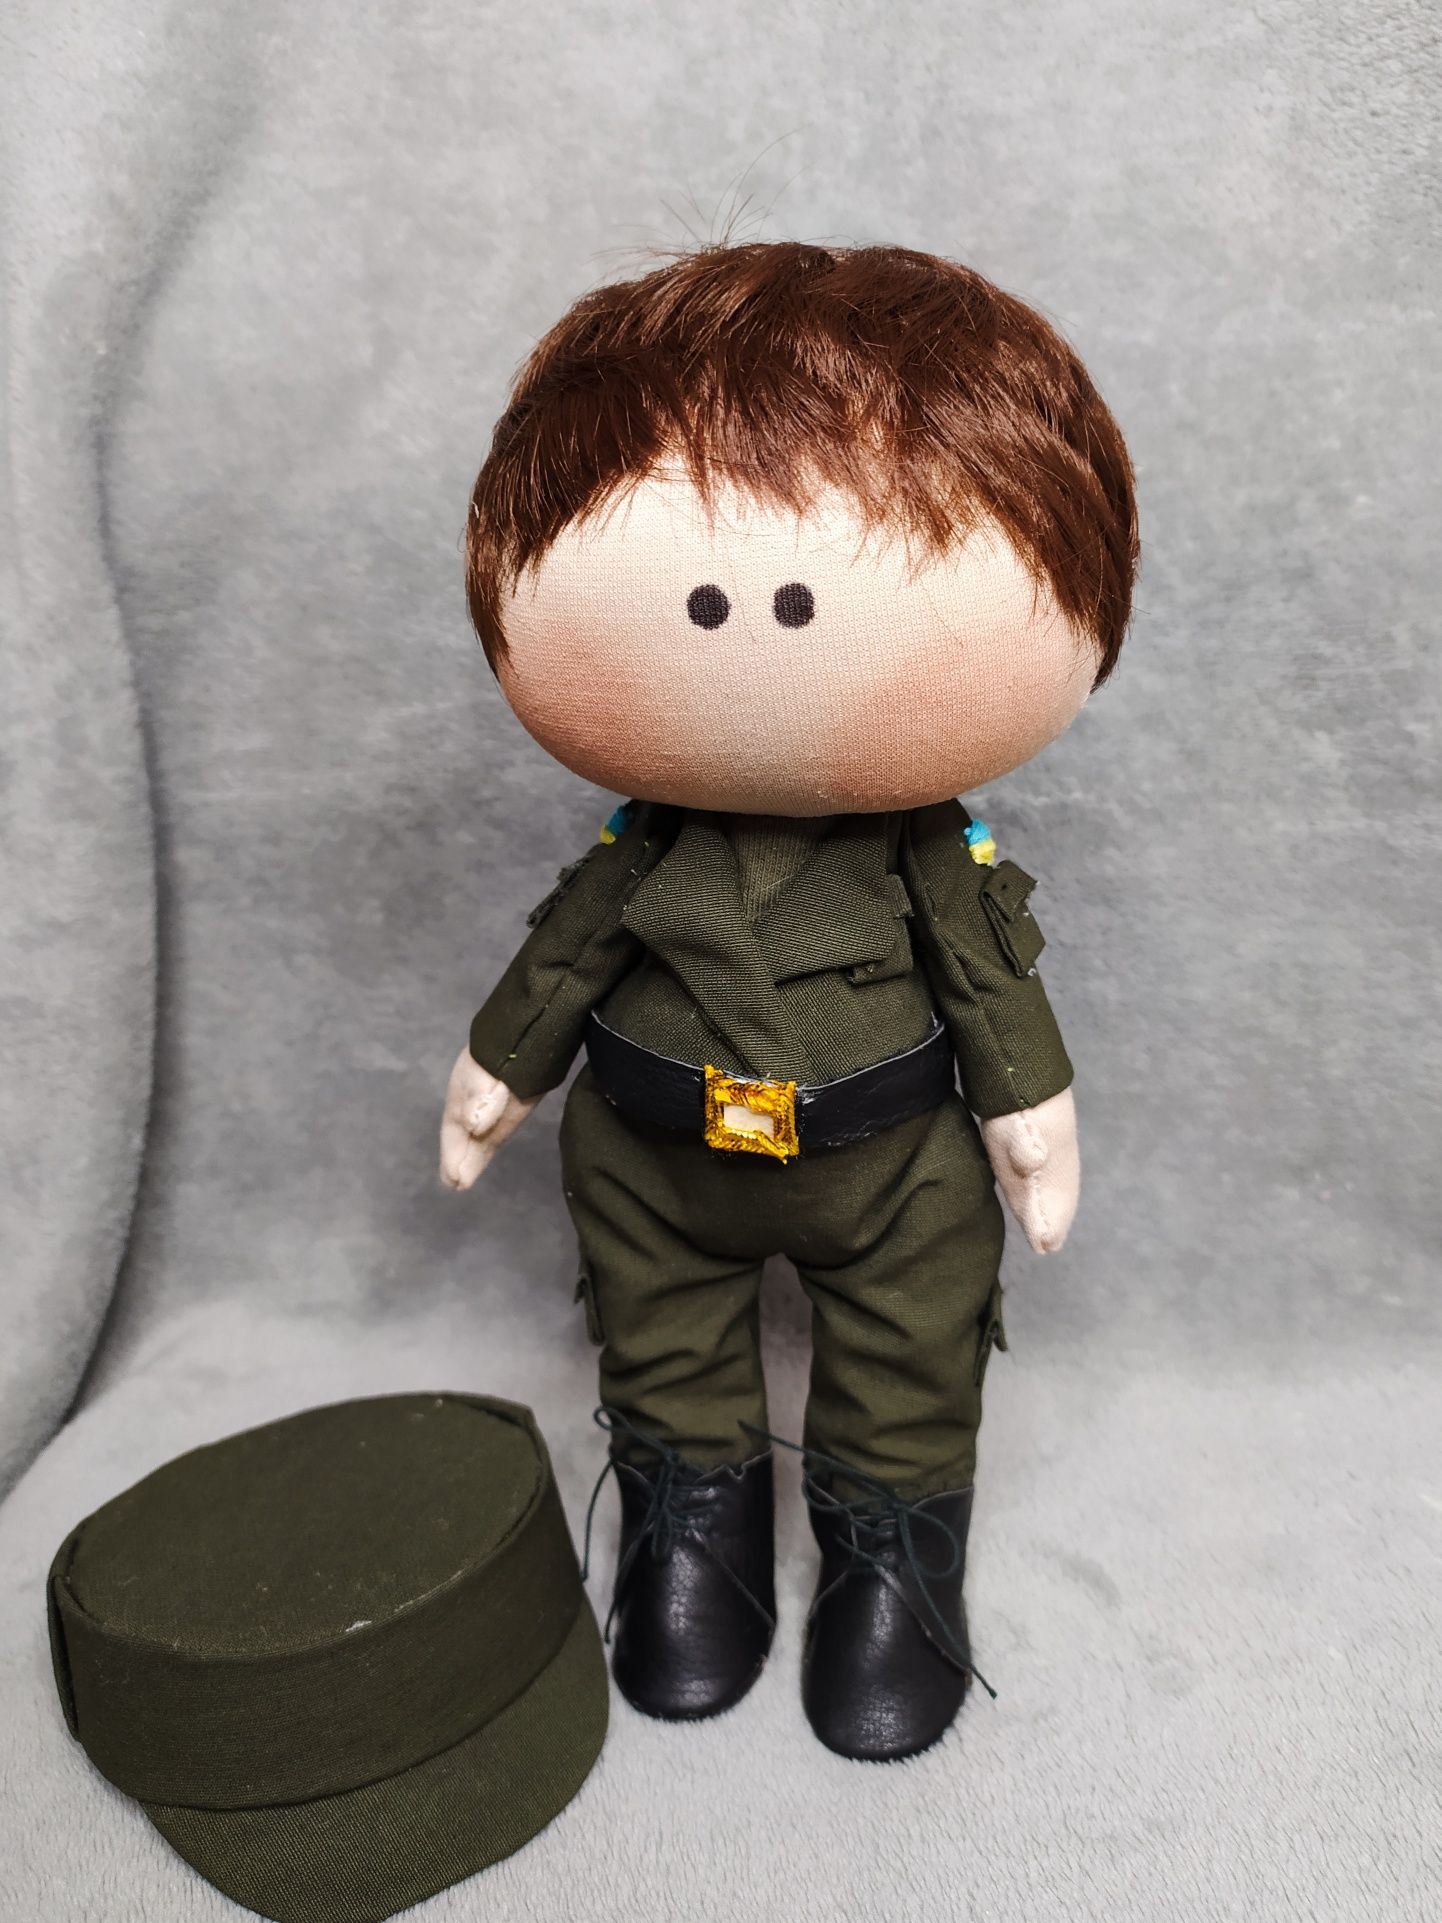 Интерьерная кукла военный, солдат Распродажа наличия